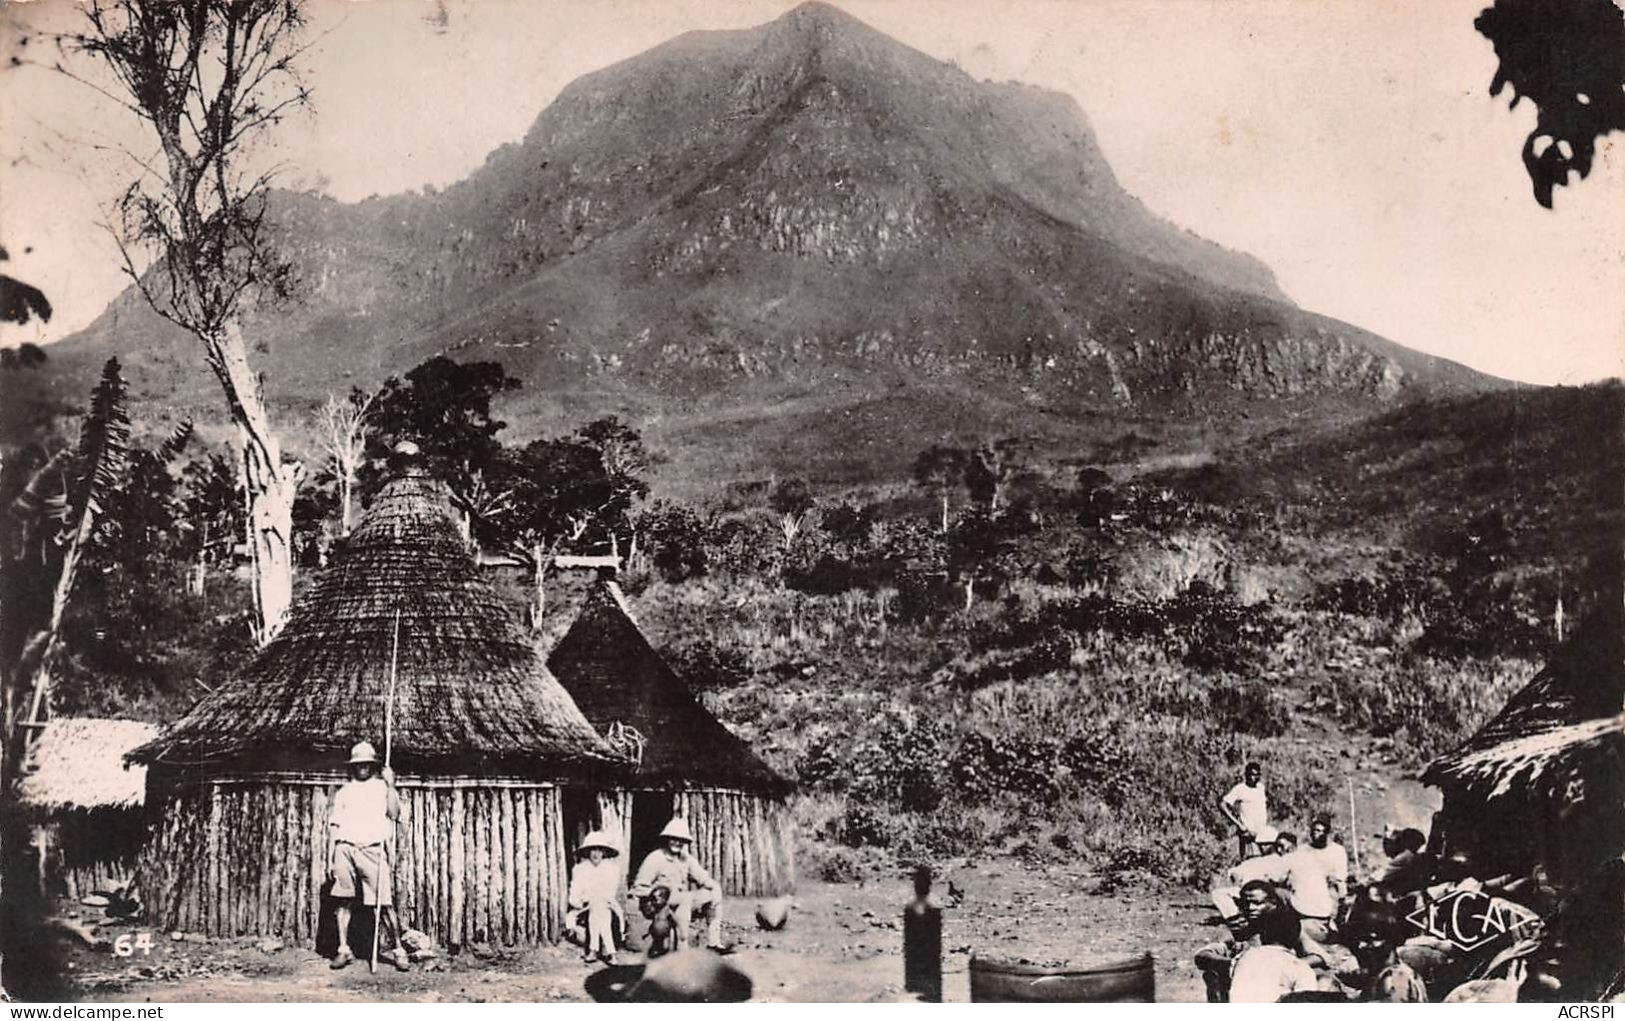 CAMEROUN  Circonscription De N'Kongsamba Montagne De Nenou   (Scan R/V) N°   7   \QQ1110Ter - Kamerun